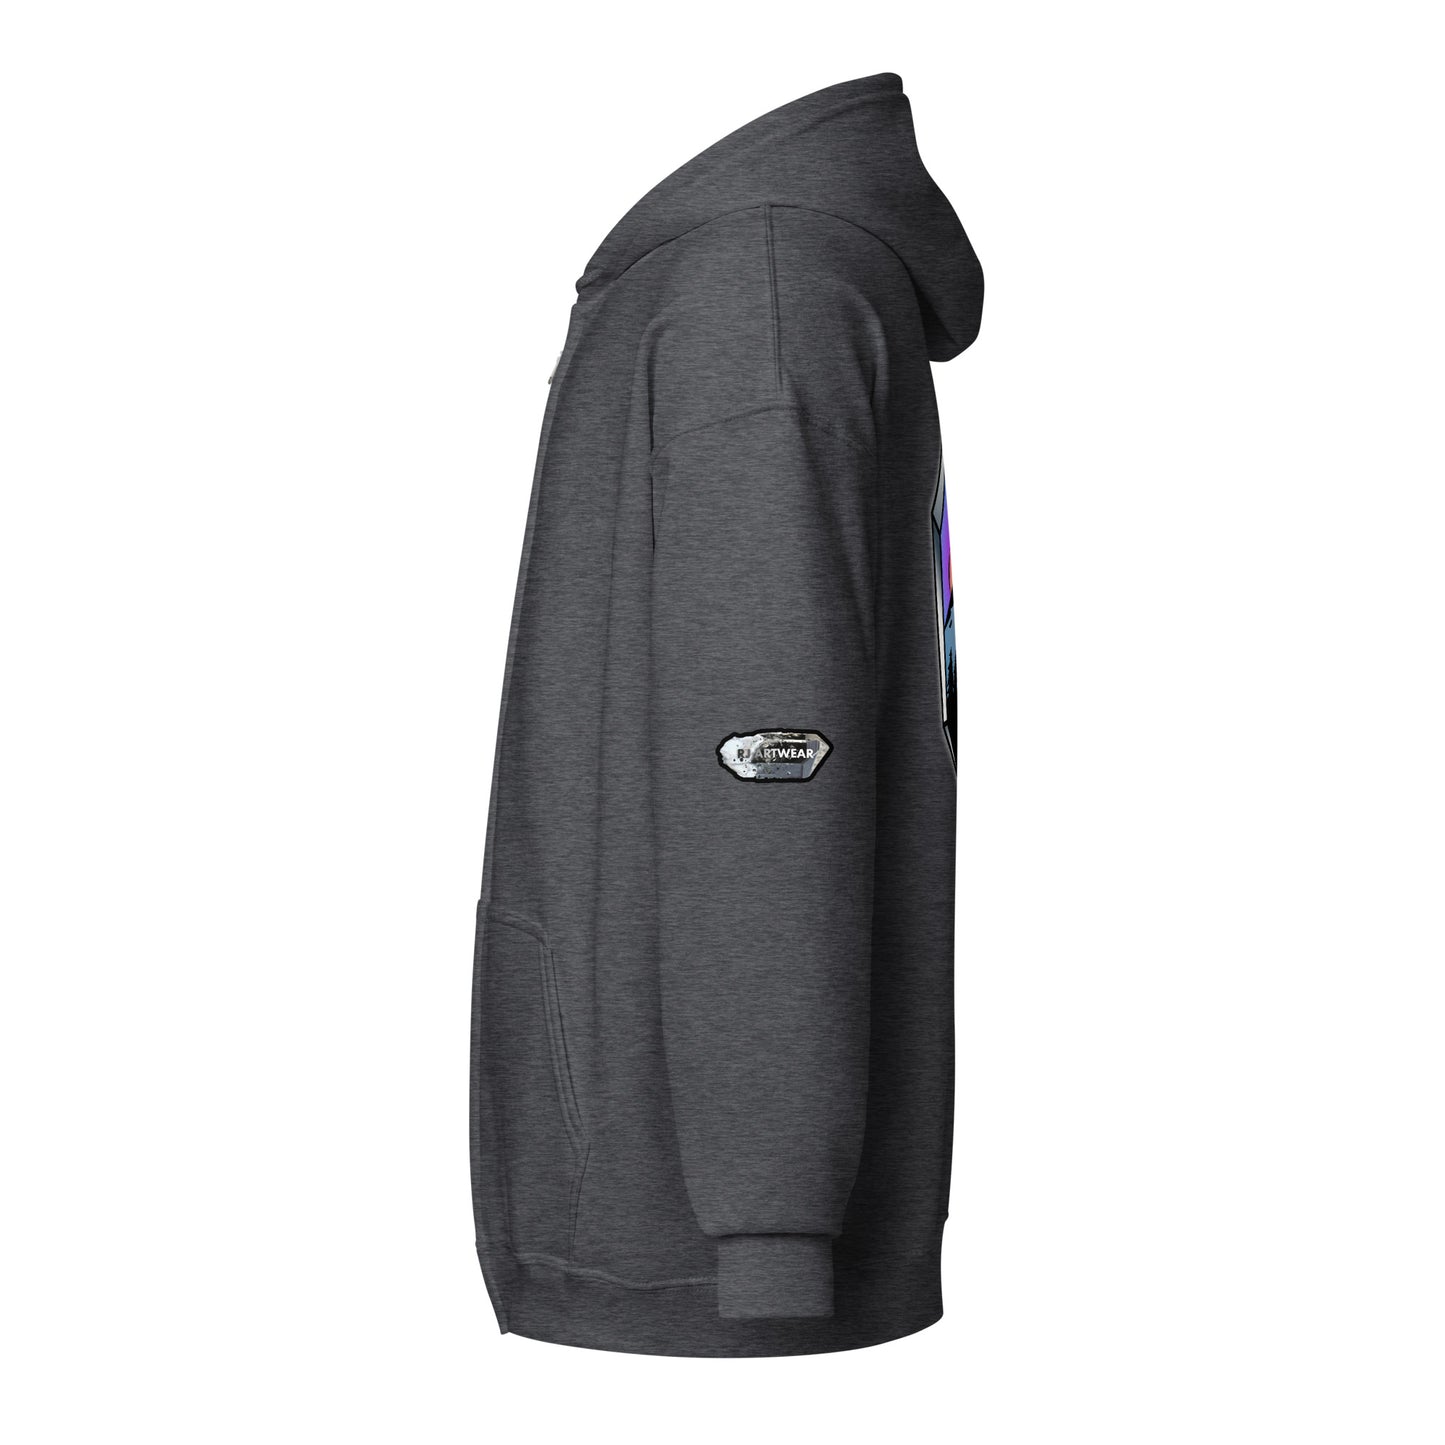 Crystal Mountain - Unisex heavy blend zip hoodie